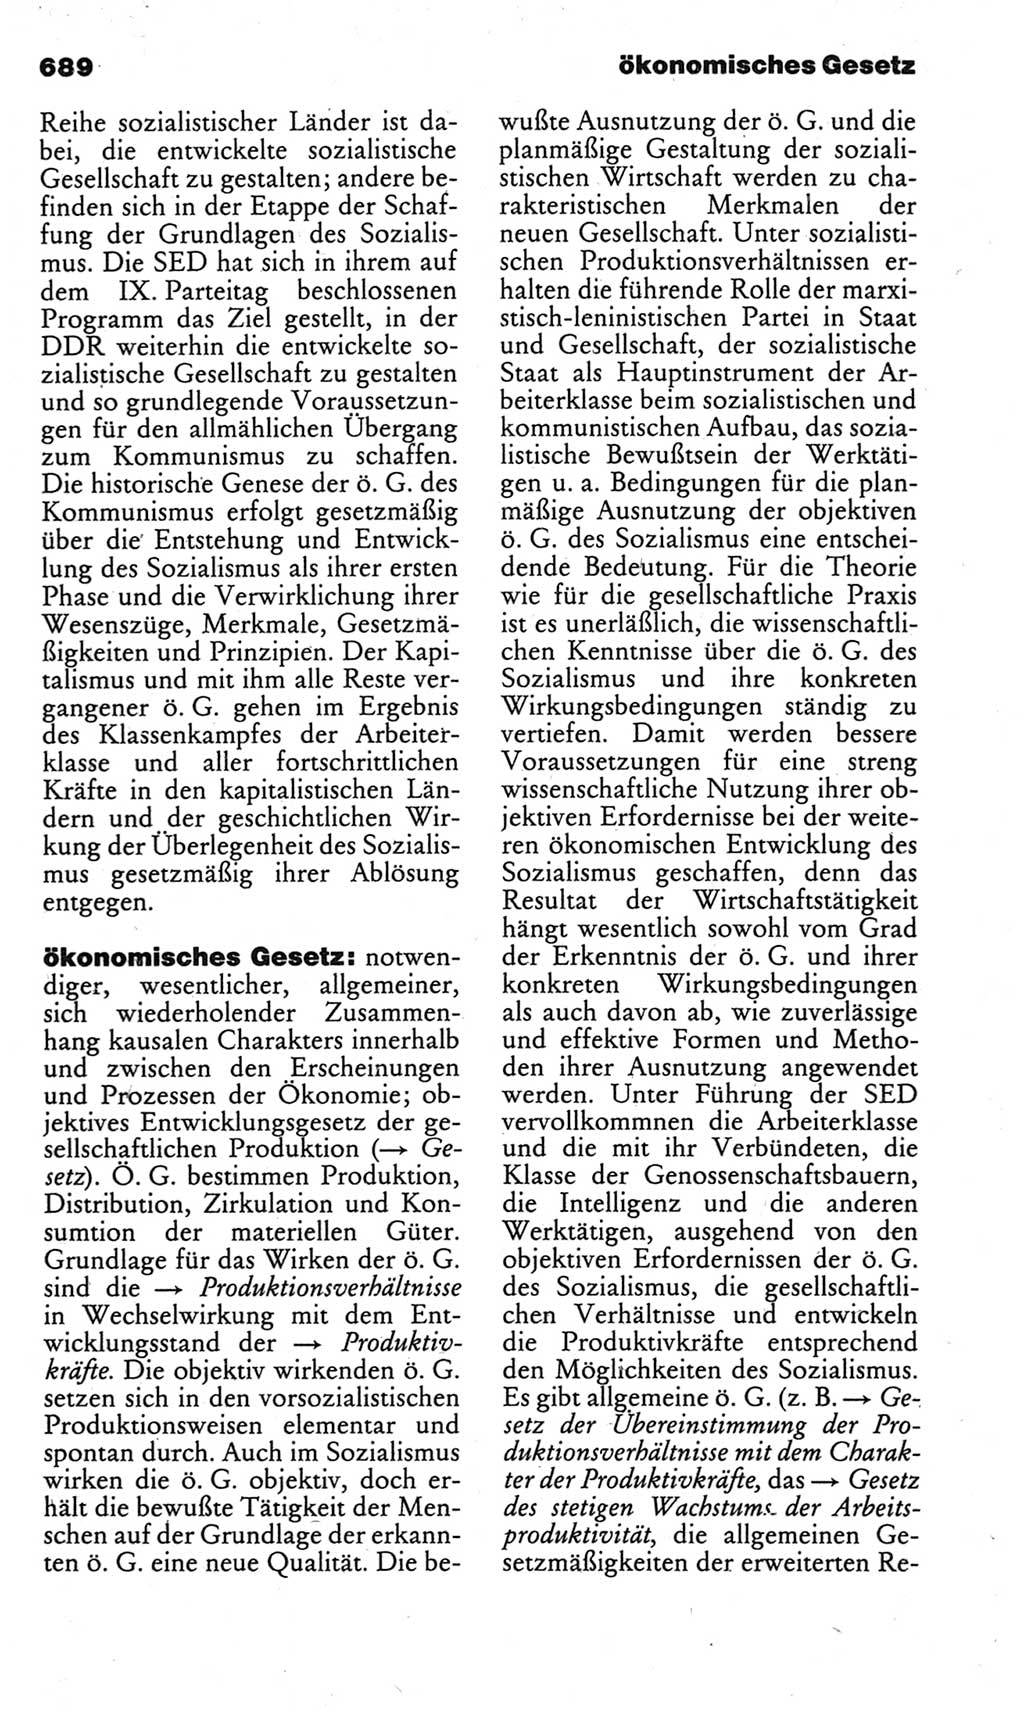 Kleines politisches Wörterbuch [Deutsche Demokratische Republik (DDR)] 1983, Seite 689 (Kl. pol. Wb. DDR 1983, S. 689)